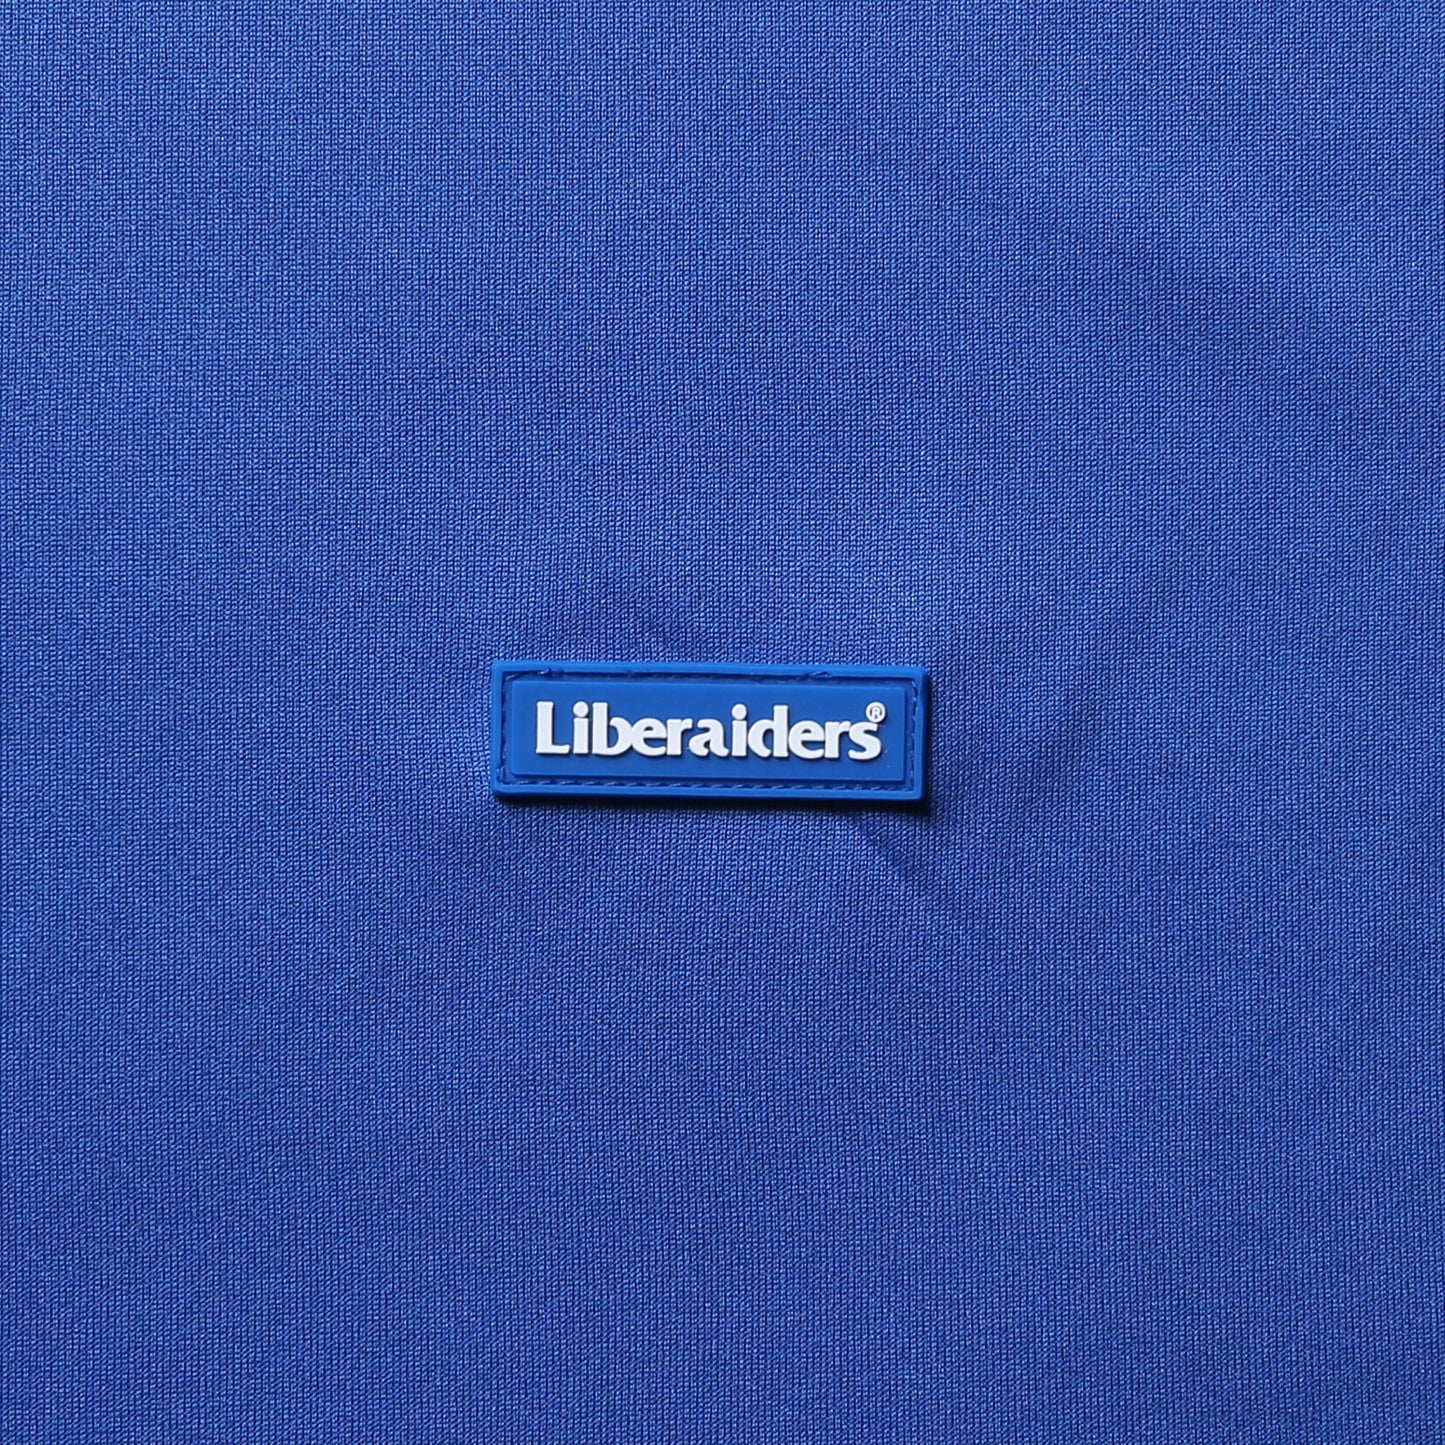 Liberaiders ® (リベレイダース) /OG LOGO L/S DRY TEE 70505 / BLUE